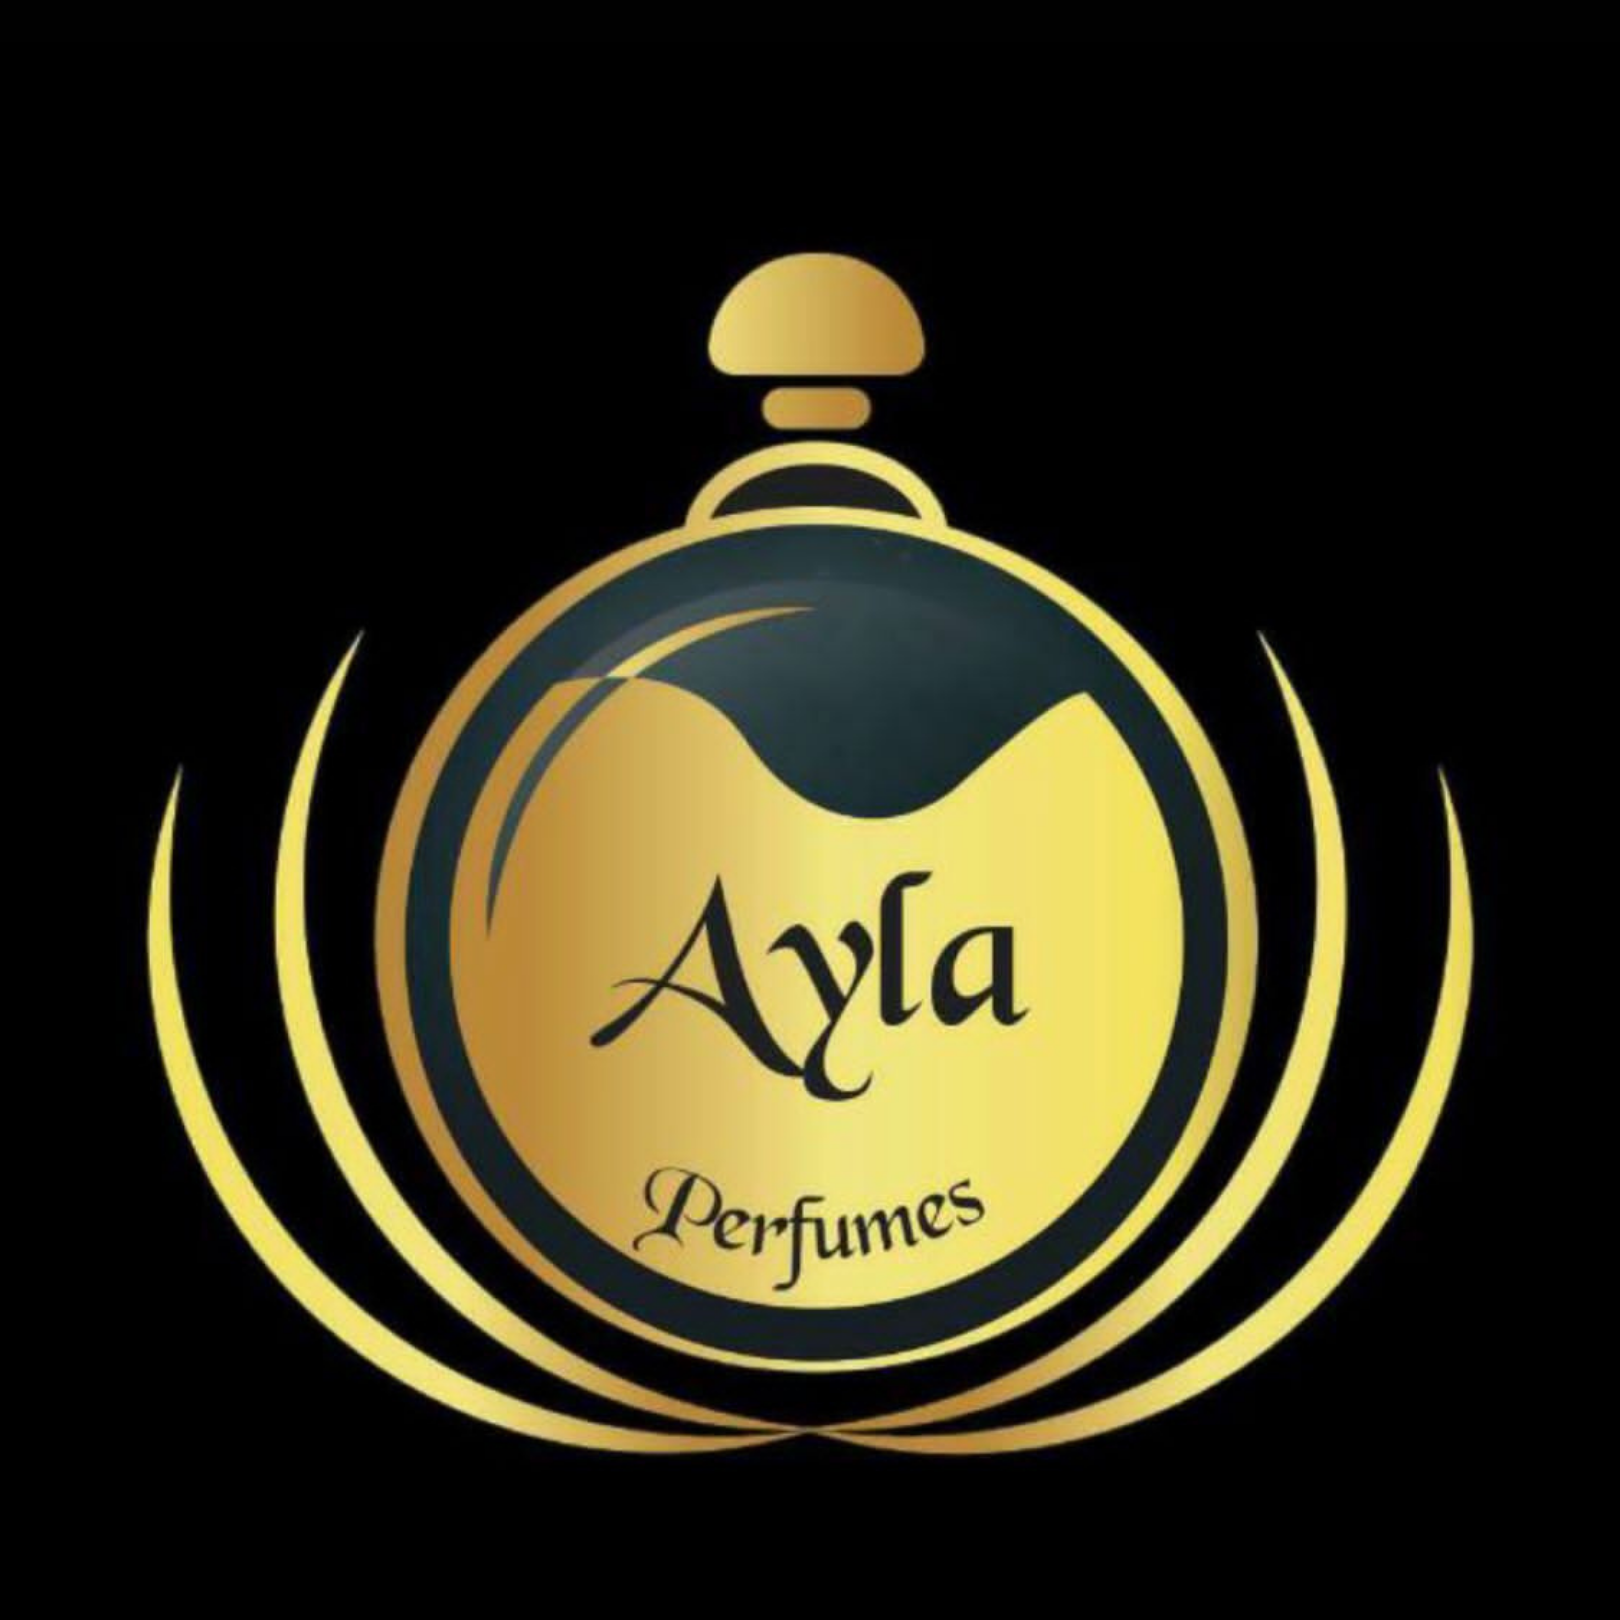 Ayla Perfumes Importados